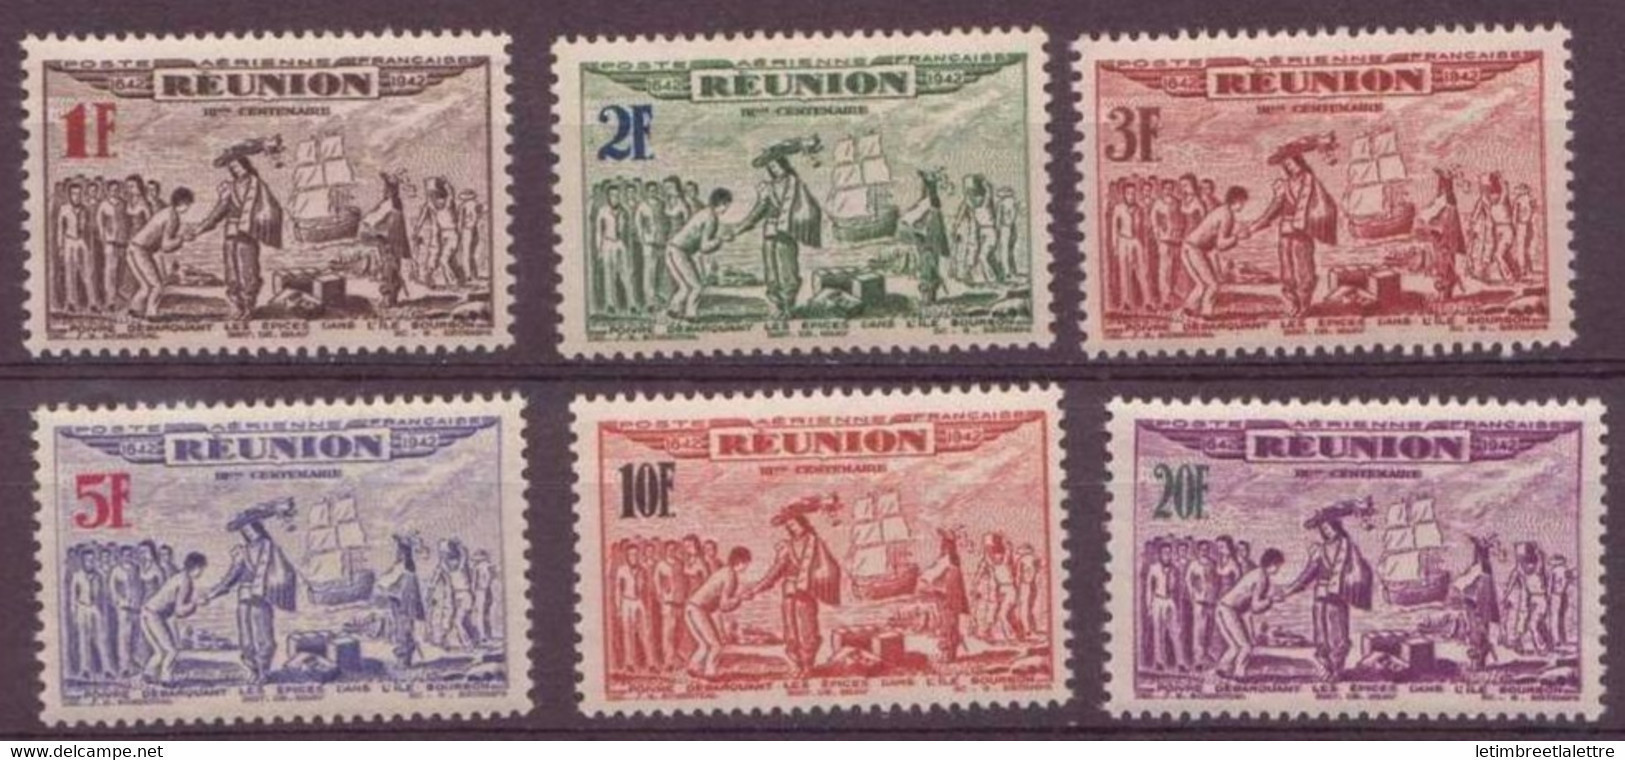 Réunion - Poste Aérienne - YT N° 18 à 23 ** - Neuf Sans Charnière - 1943 - Airmail